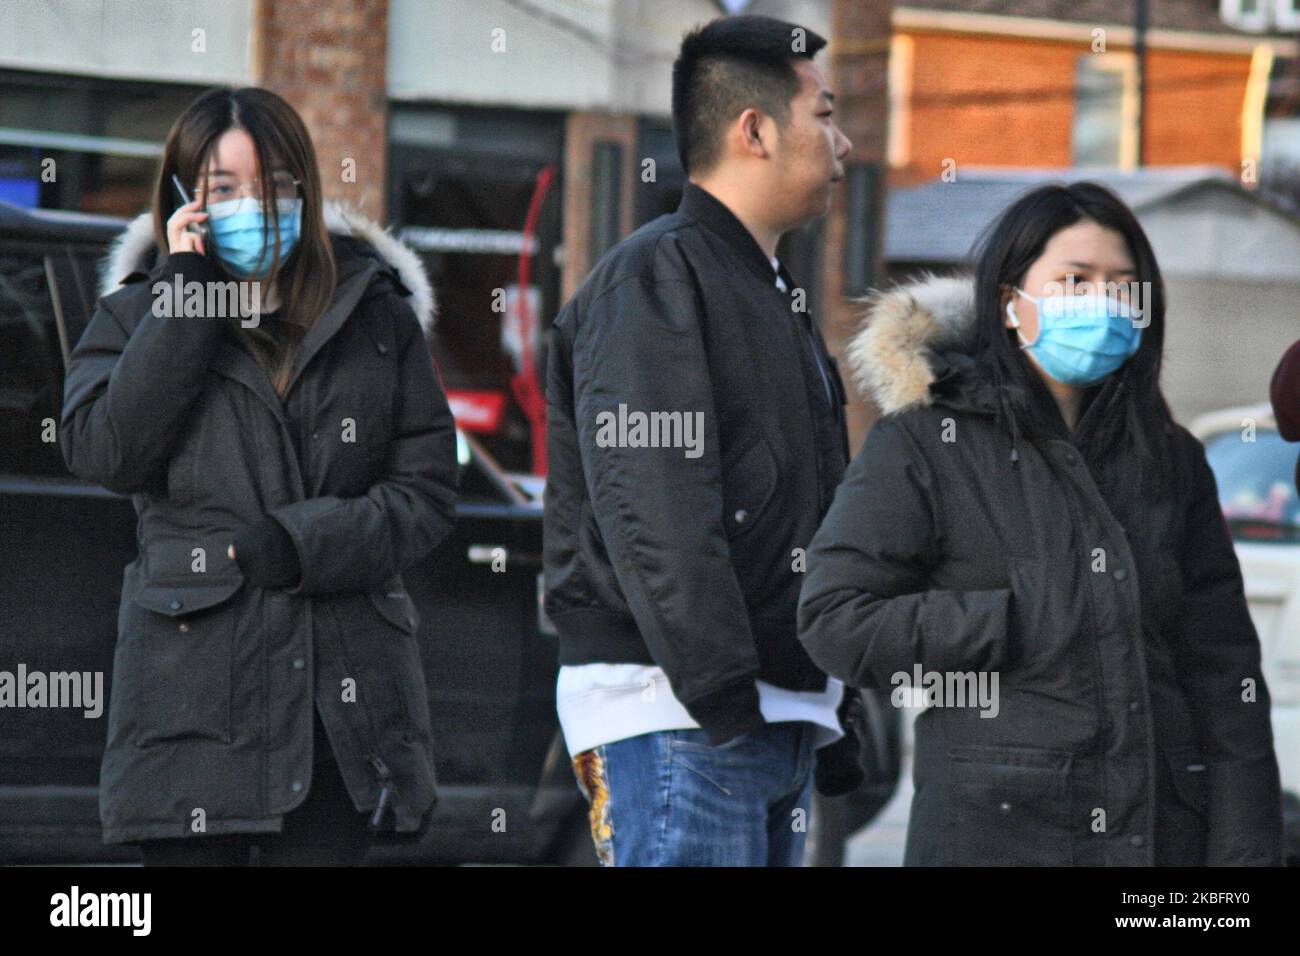 Una grande folla di persone che indossano mascherine si allineano fuori un negozio che vende disinfettante alcolico di forza industriale, disinfettante per le mani e n95 mascherine a Toronto, Ontario, Canada il 29 gennaio 2020, mentre i torontoni si rimescolano per proteggersi in mezzo allo scoppio del nuovo coronavirus (2019-nCoV). La salute pubblica di Toronto ha confermato sabato che un caso del nuovo coronavirus che ha avuto origine a Wuhan, Cina, è attualmente in trattamento in un ospedale di Toronto, come casi più presunti del coronavirus di Wuhan continuano ad essere segnalati in tutto il paese. Maschere facciali e disinfettante sono esauriti Foto Stock